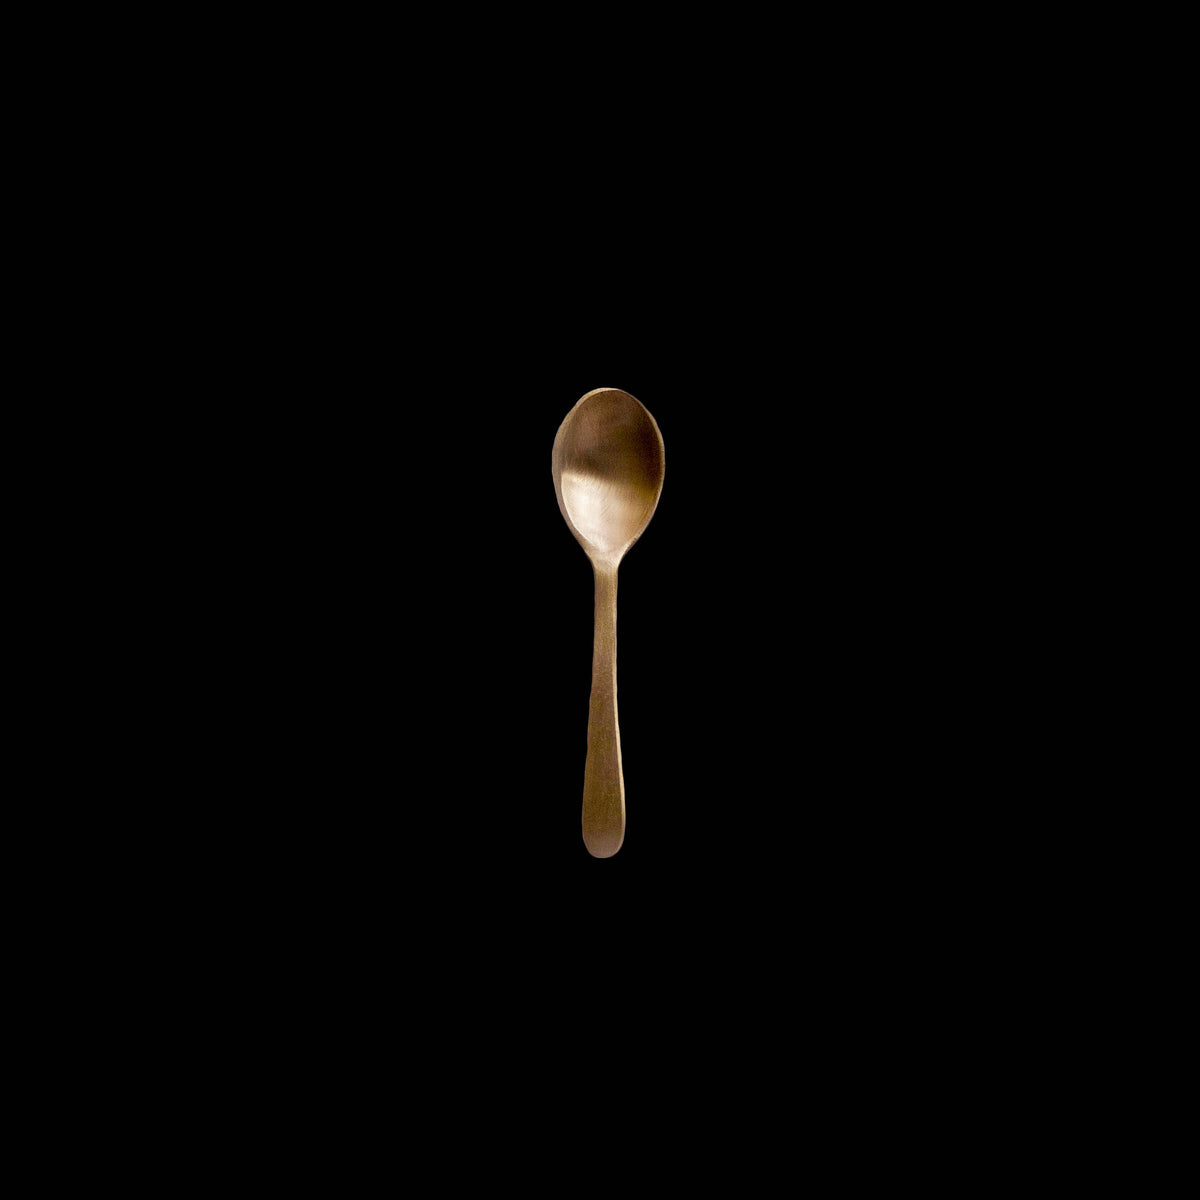 Handmade Artisanal Brass Spoons (50 Spoons)